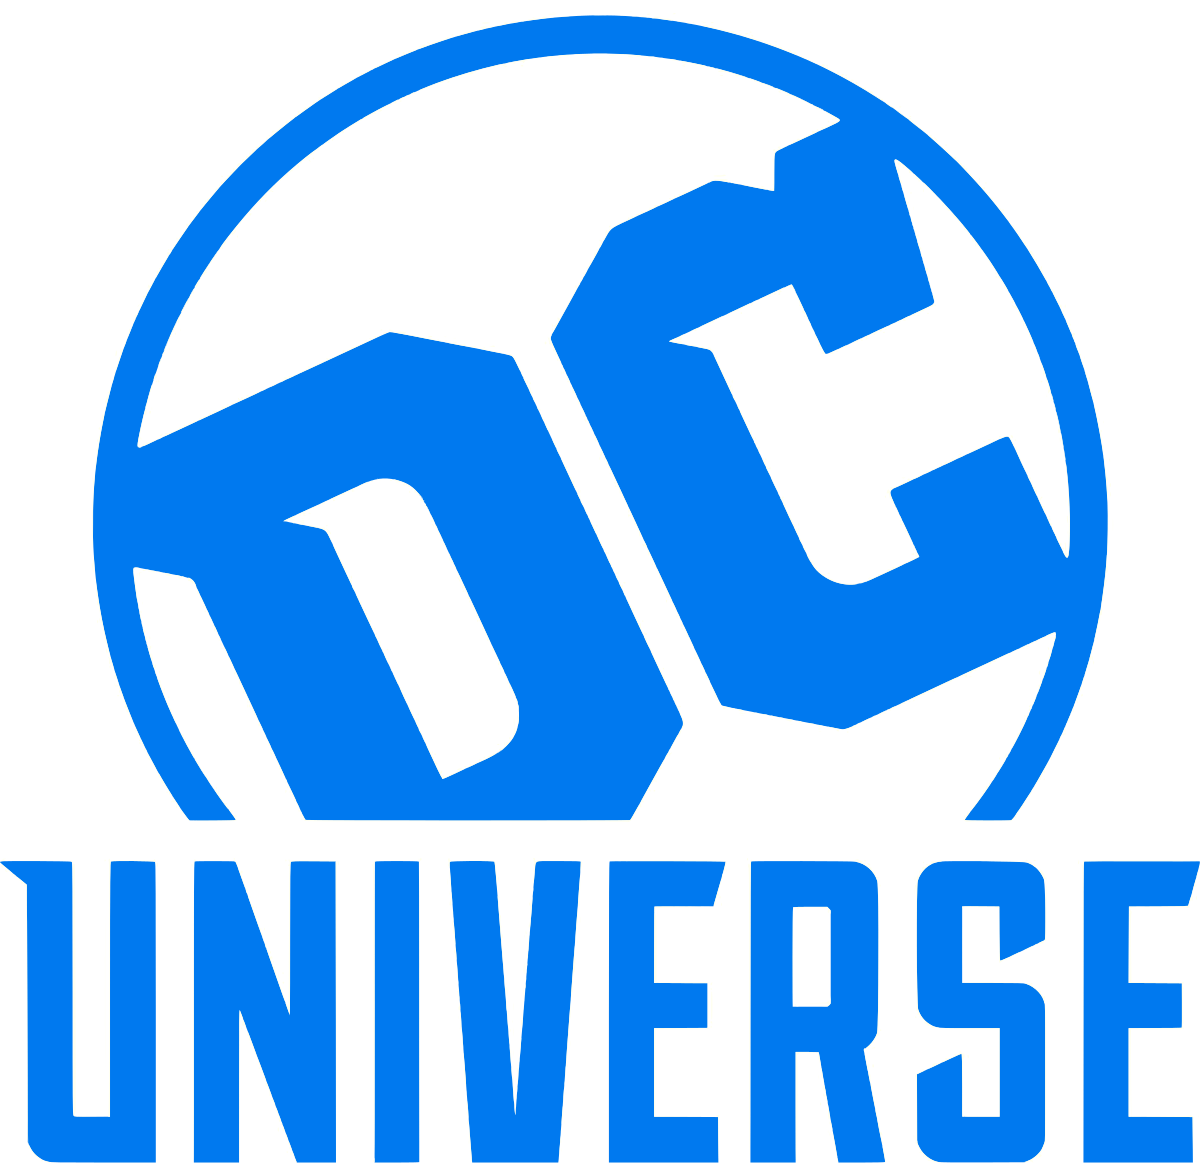 DC Logo PNG Image File